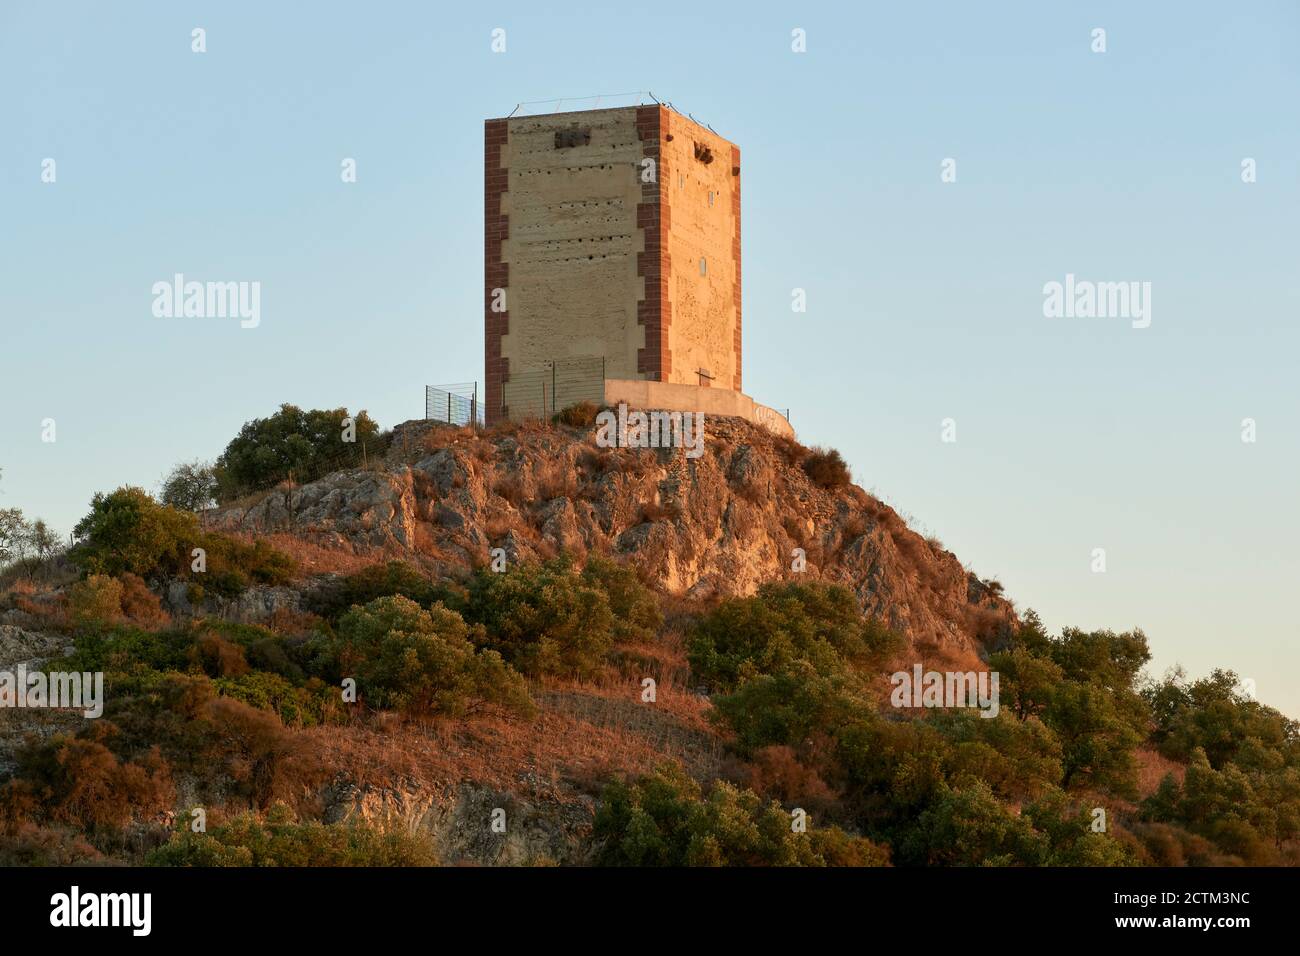 Rekonstruktion des Bergamtes der Burg von Anzur de Puente Genil, Cordoba. Analucia, Spanien Stockfoto